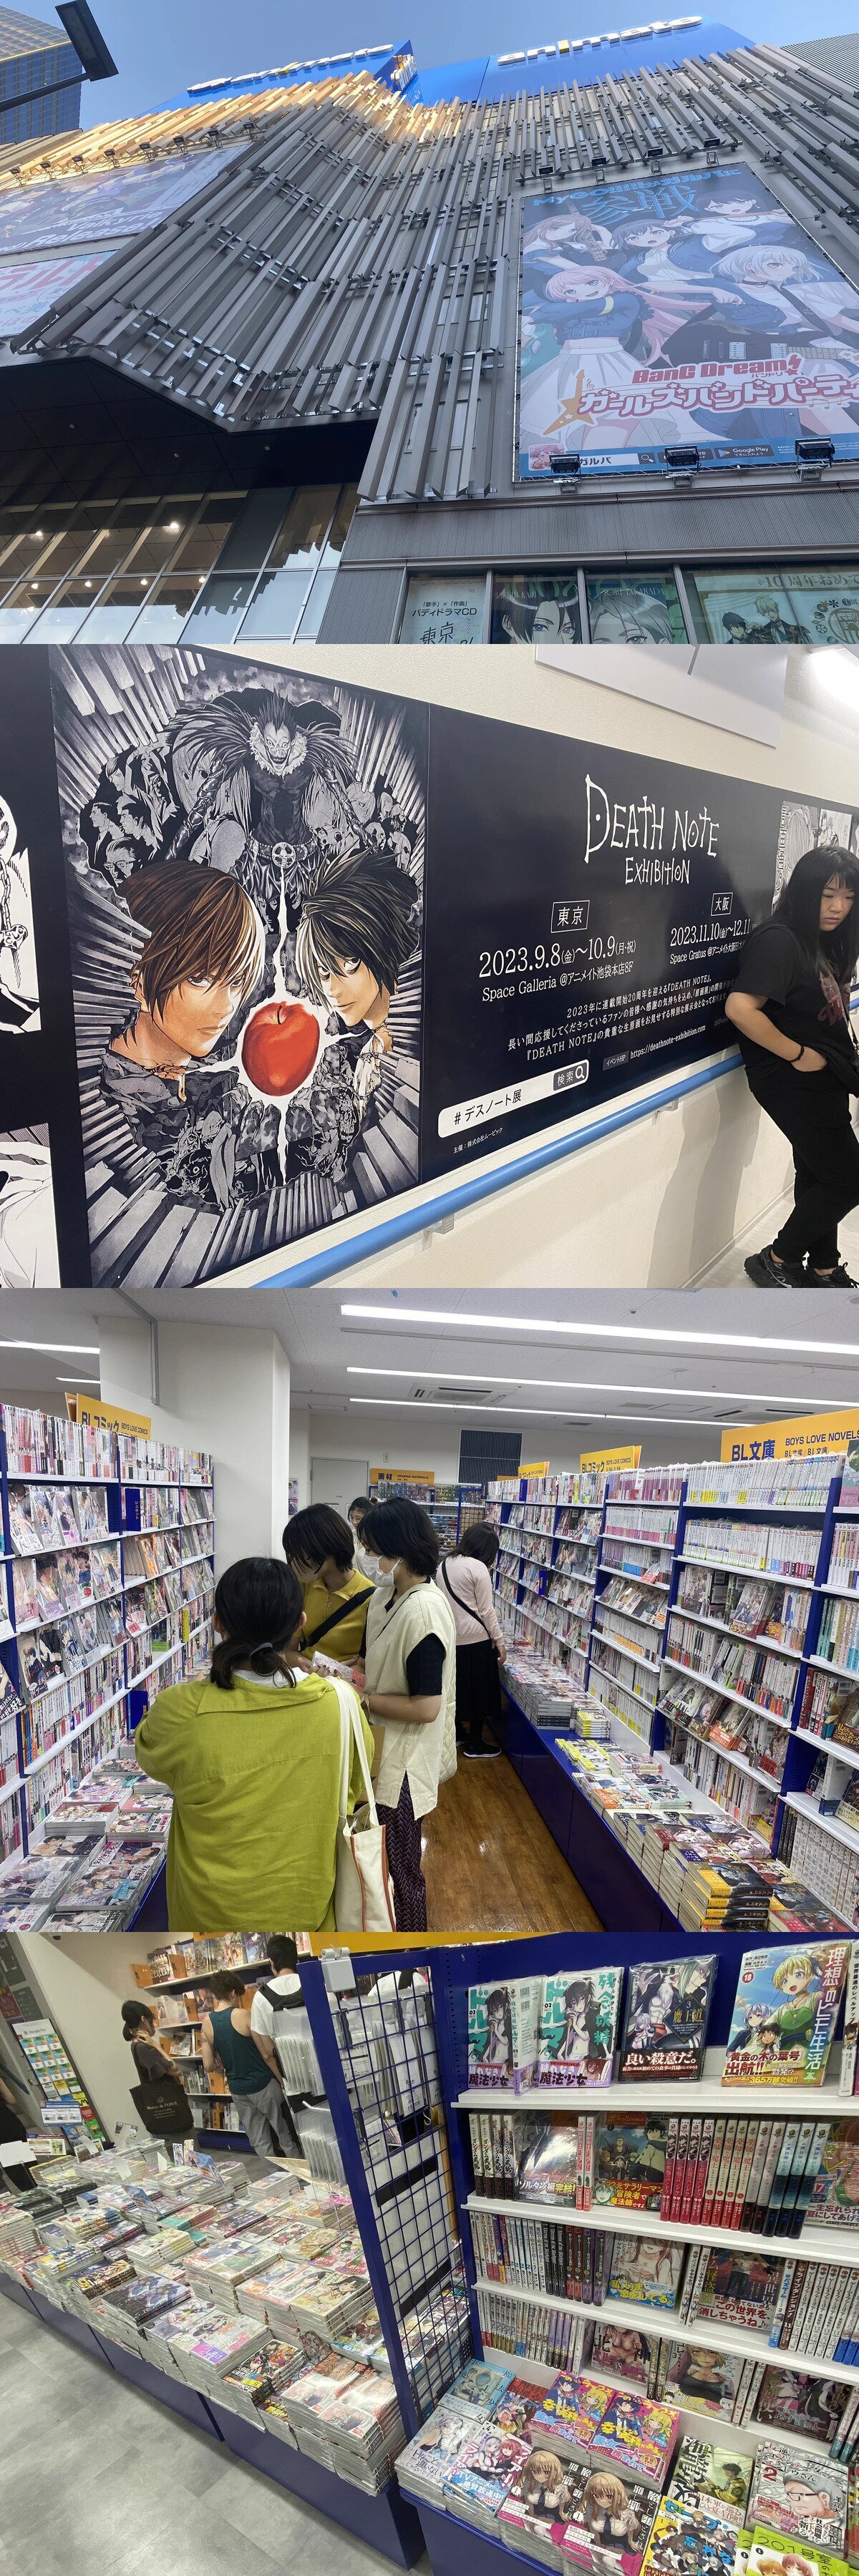 Ésta es la tienda de manga y anime más grande del mundo. Ocho plantas de merchandising, manga, artbooks, etc...